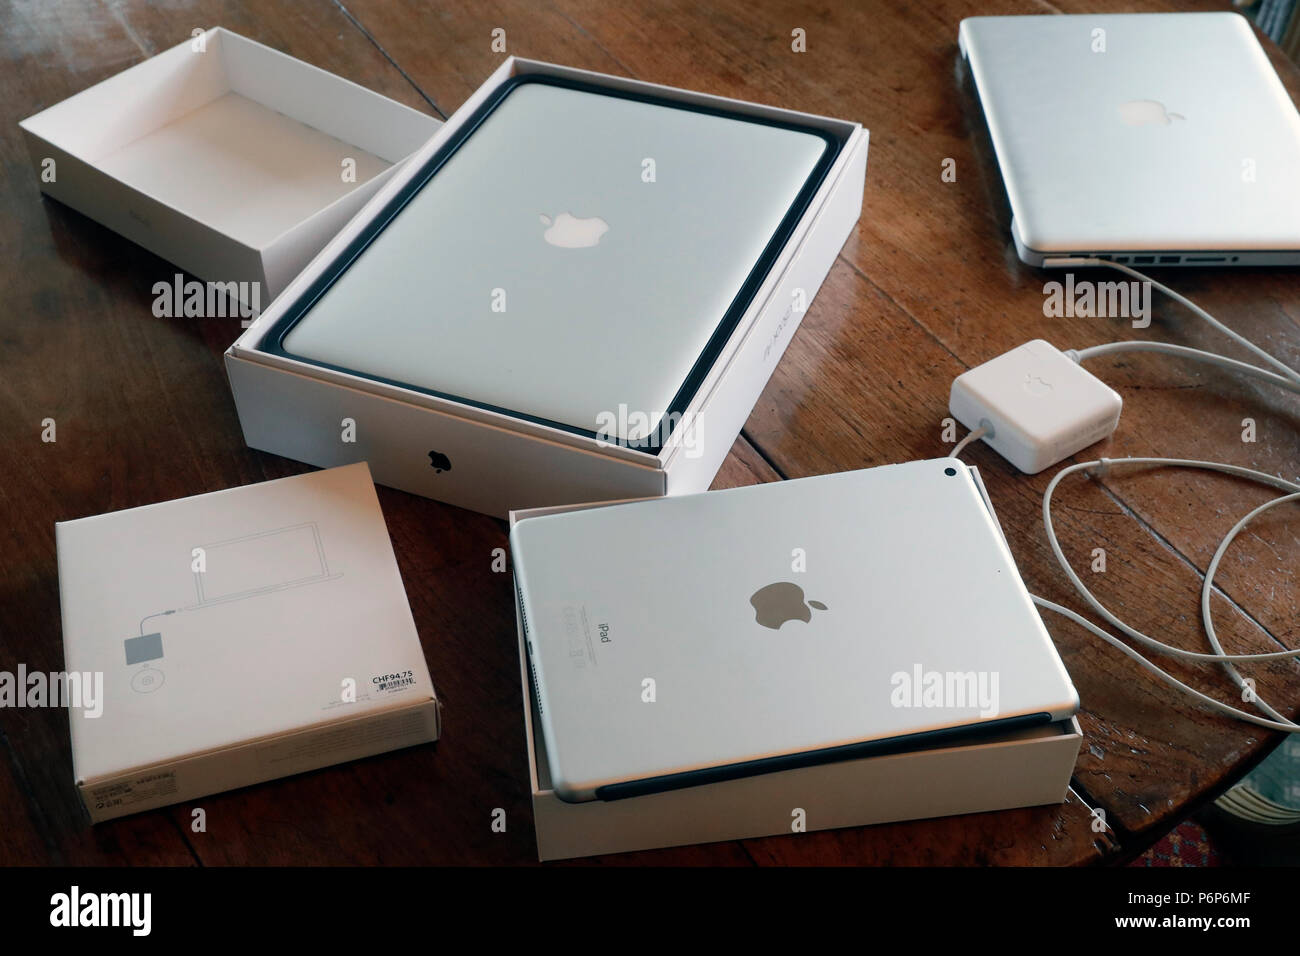 Nuovo tablet Ipad e il nuovo Mac Book Air. Ginevra. La Svizzera. Foto Stock